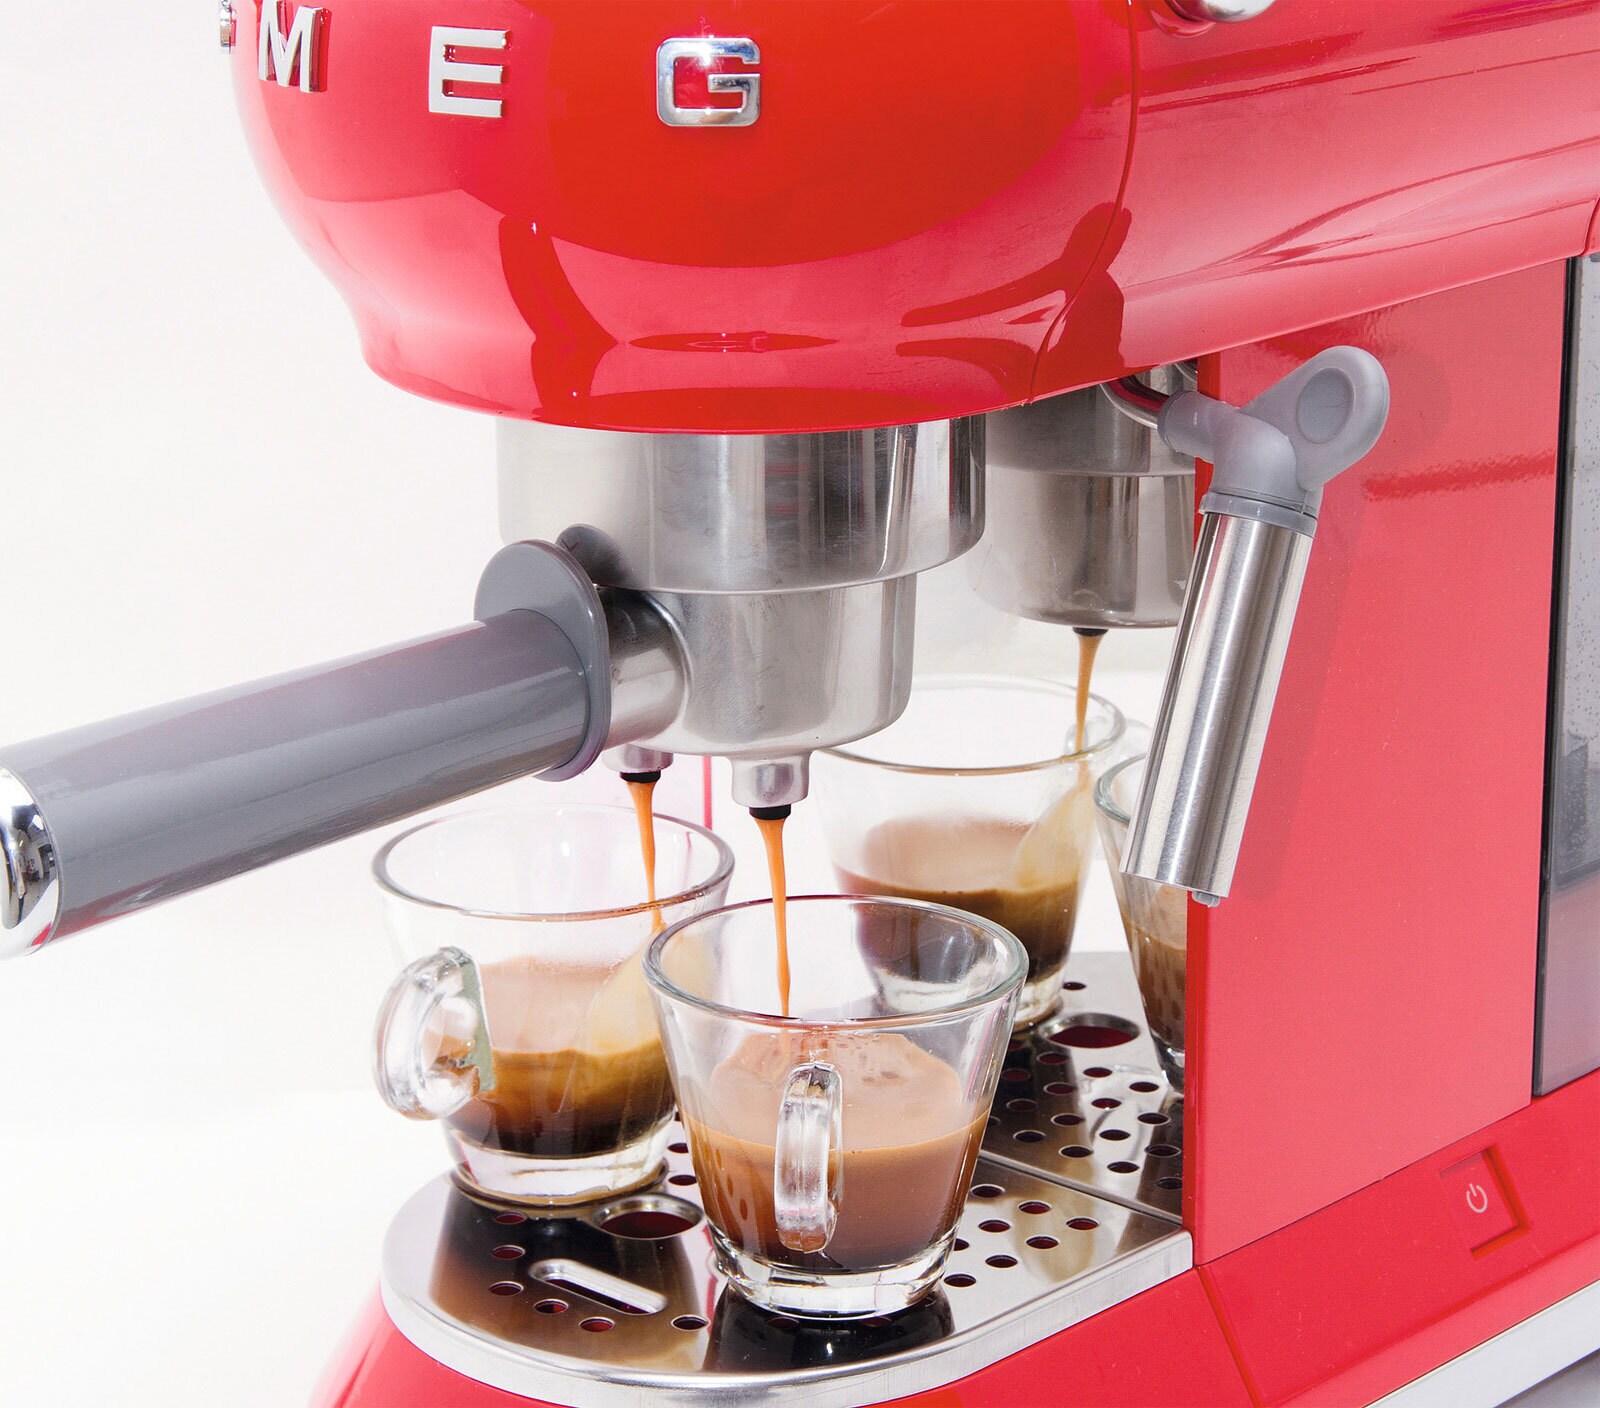 SMEG Espresso-Kaffeemaschine Retro rot